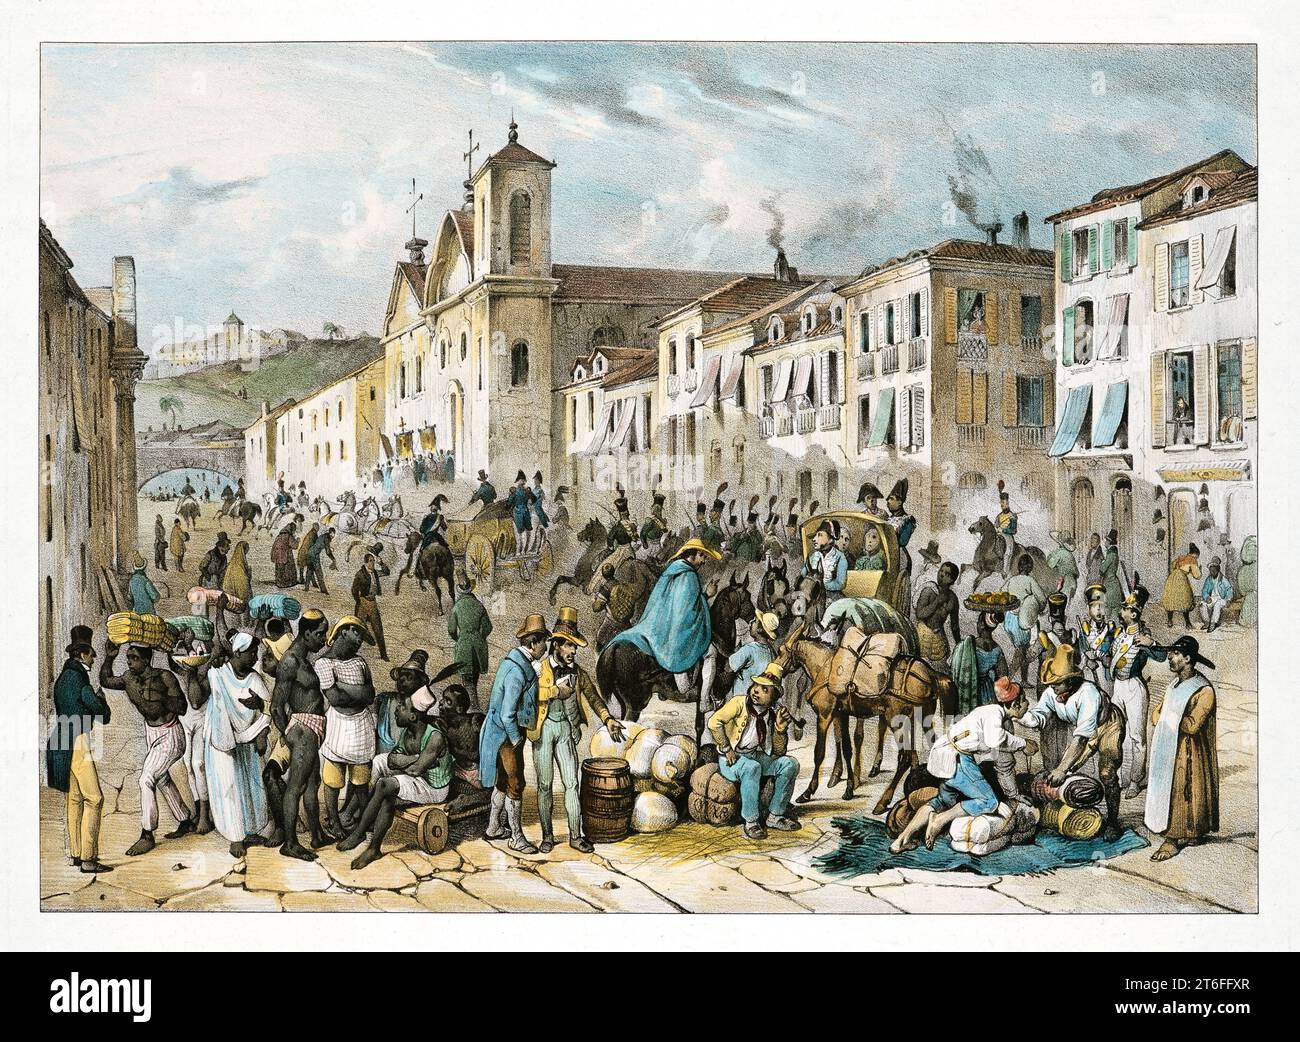 Vue ancienne de la rue droite à Riuo de Janeiro, Brésil. Par J.M. Rugendas, publ. en 1835 Banque D'Images